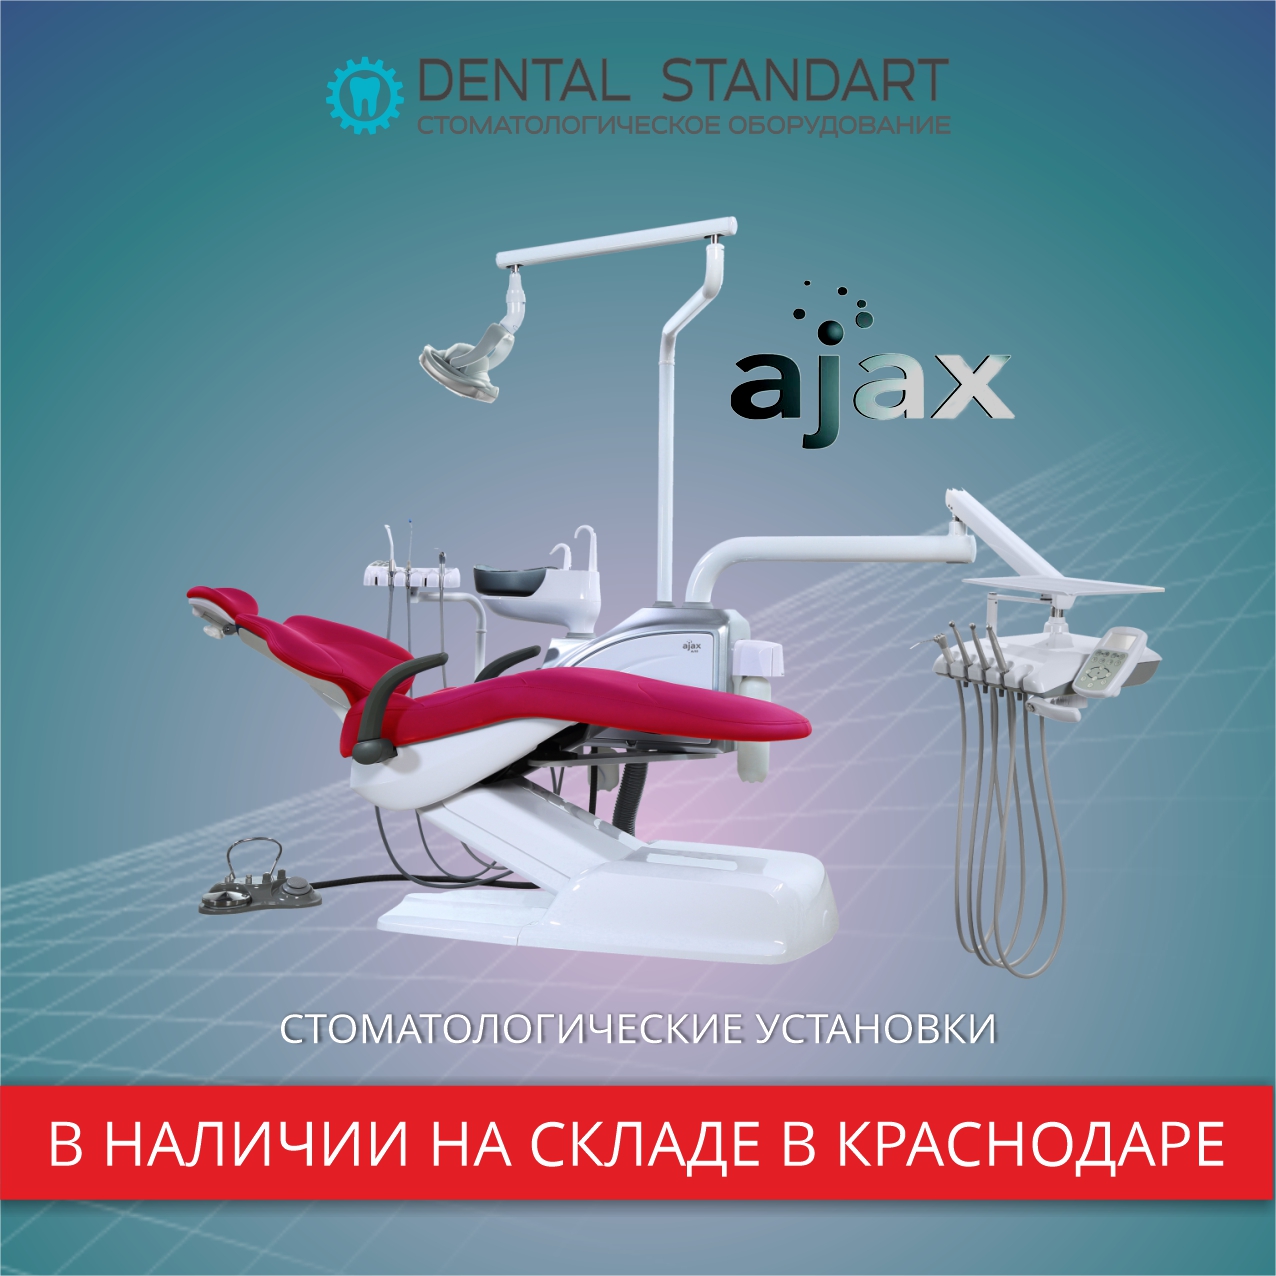 Стоматологические установки в наличии в Краснодаре.